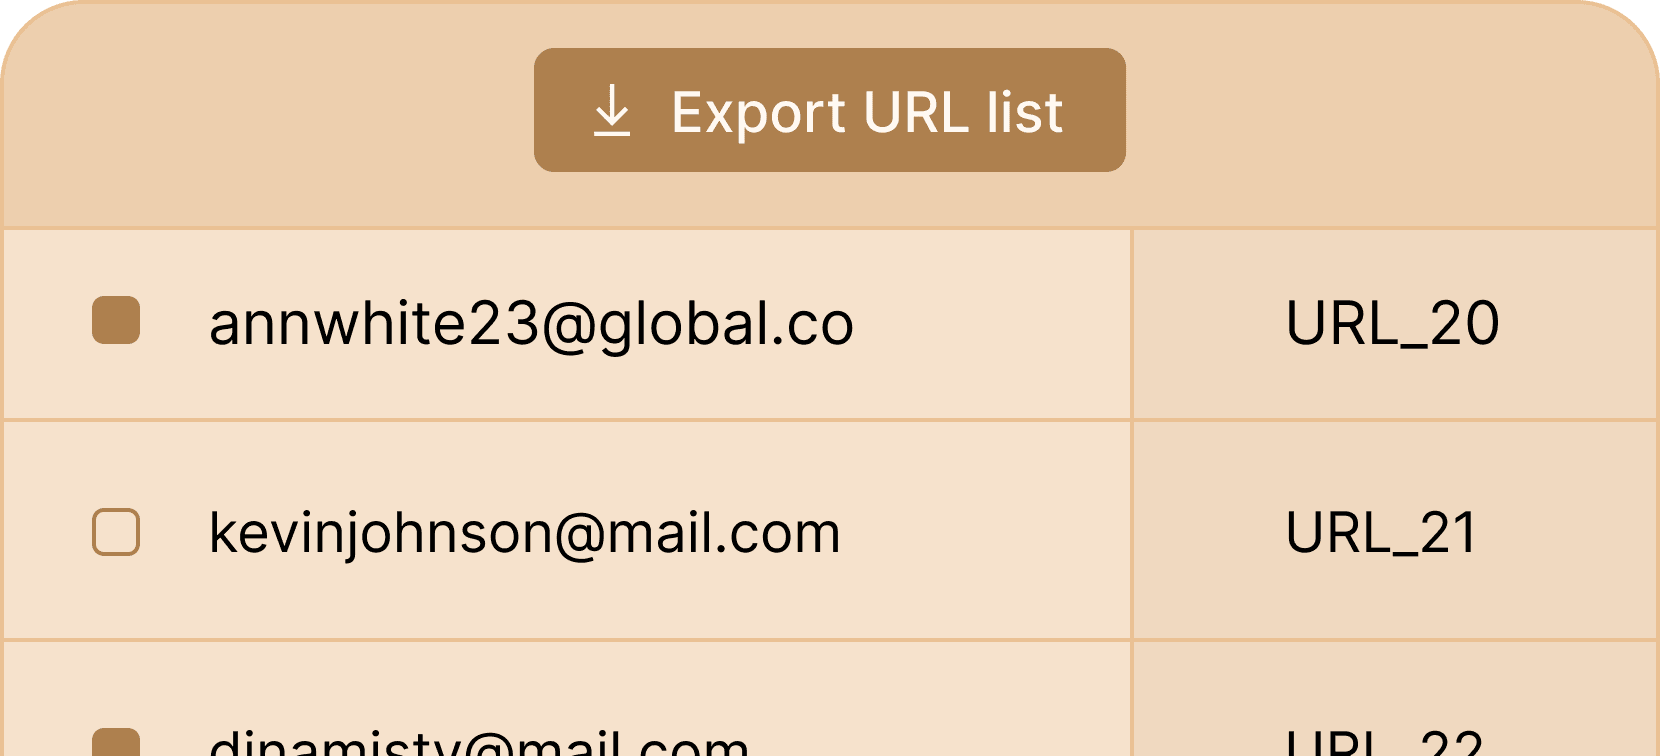 Export credentials as url list - Certifier features